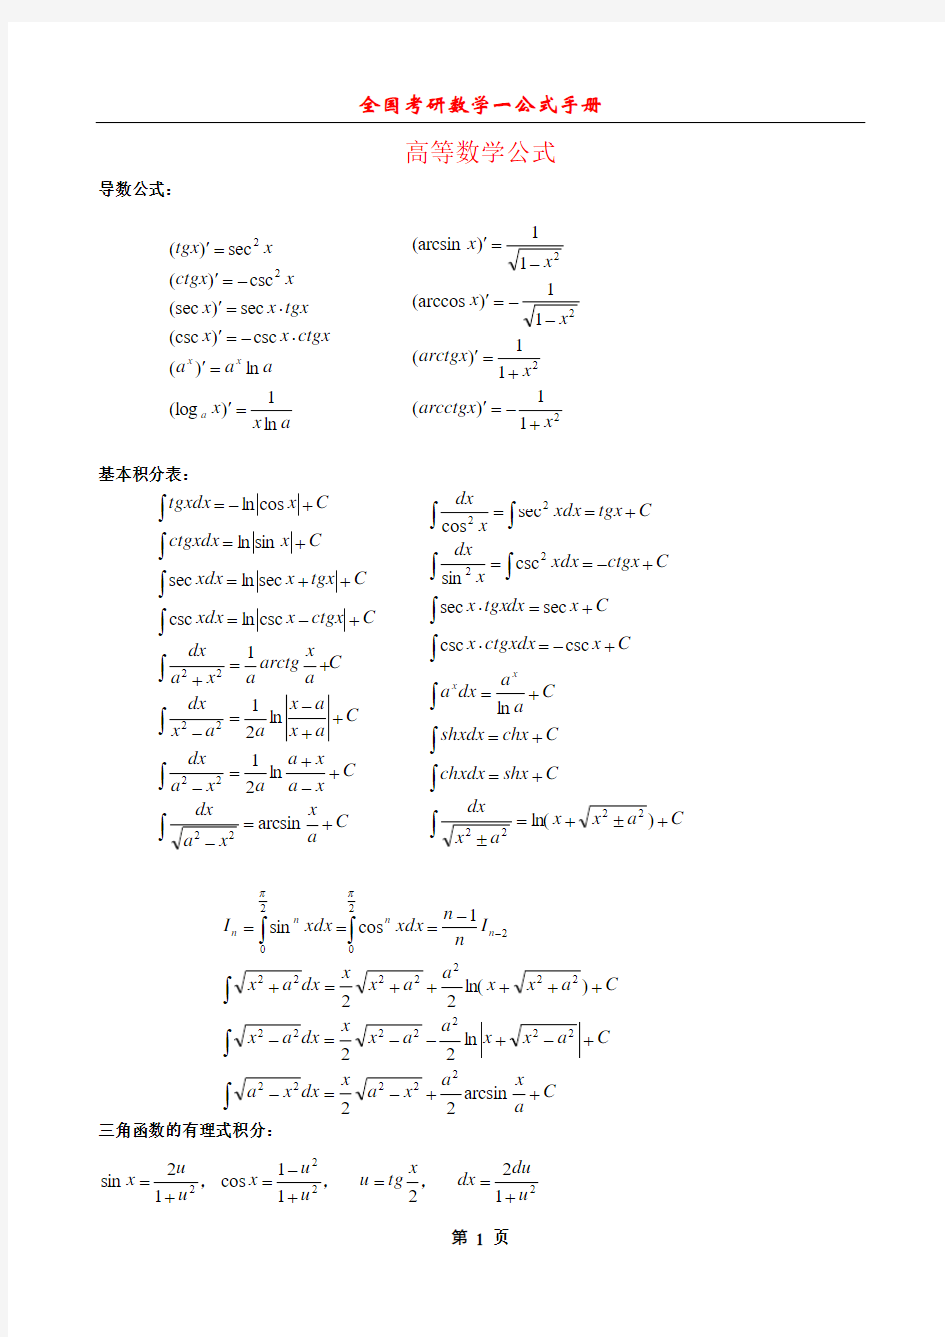 考研数学一公式手册大全(最新整理全面).pdf